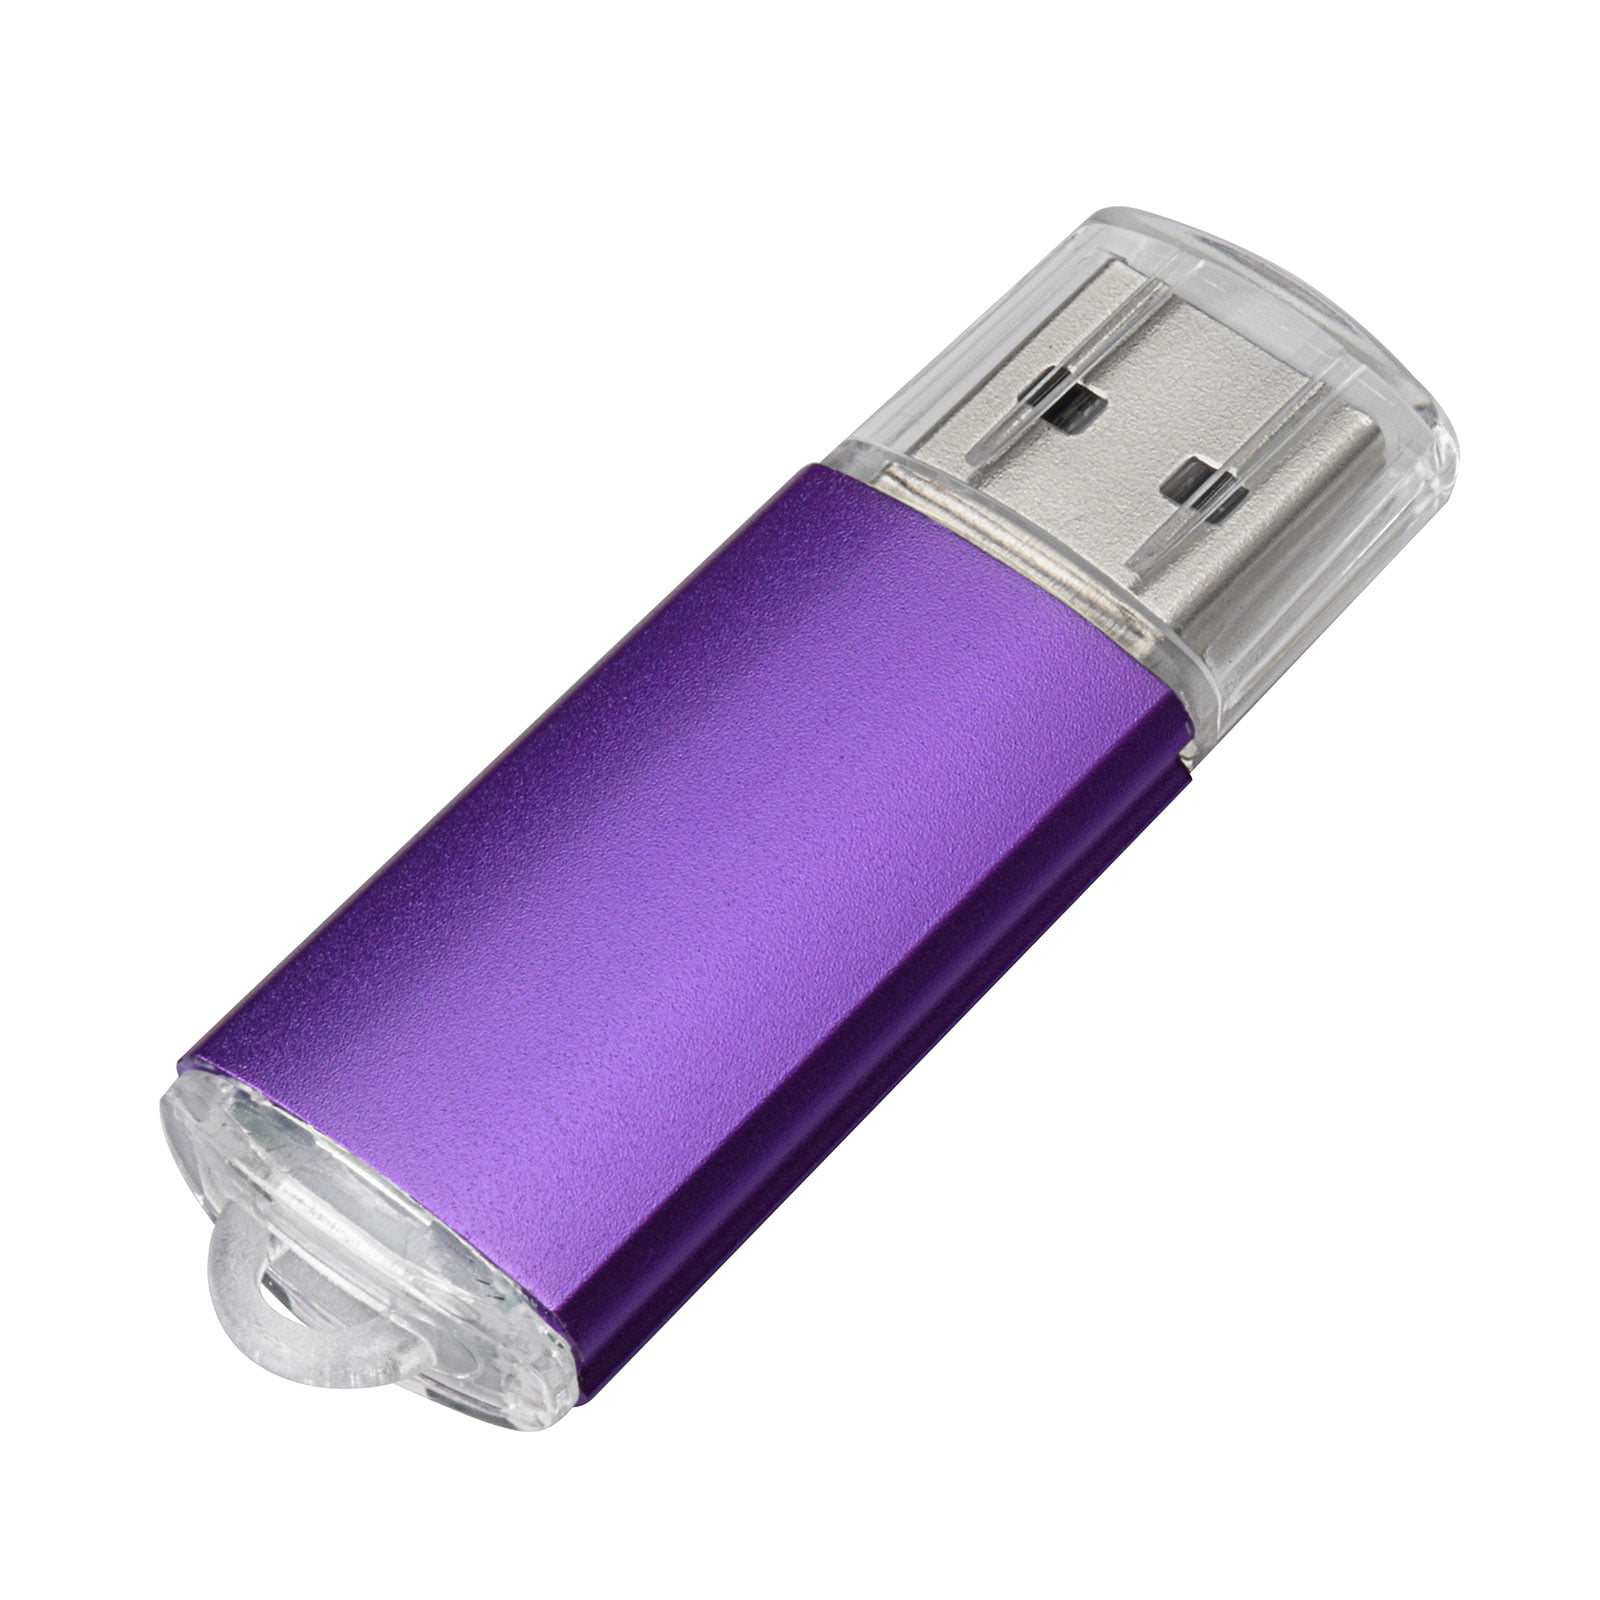 5pcs 1GB USB Flash Drives Multicolor Thumb USB 2.0 Memory Stick Pen Drive - Walmart.com